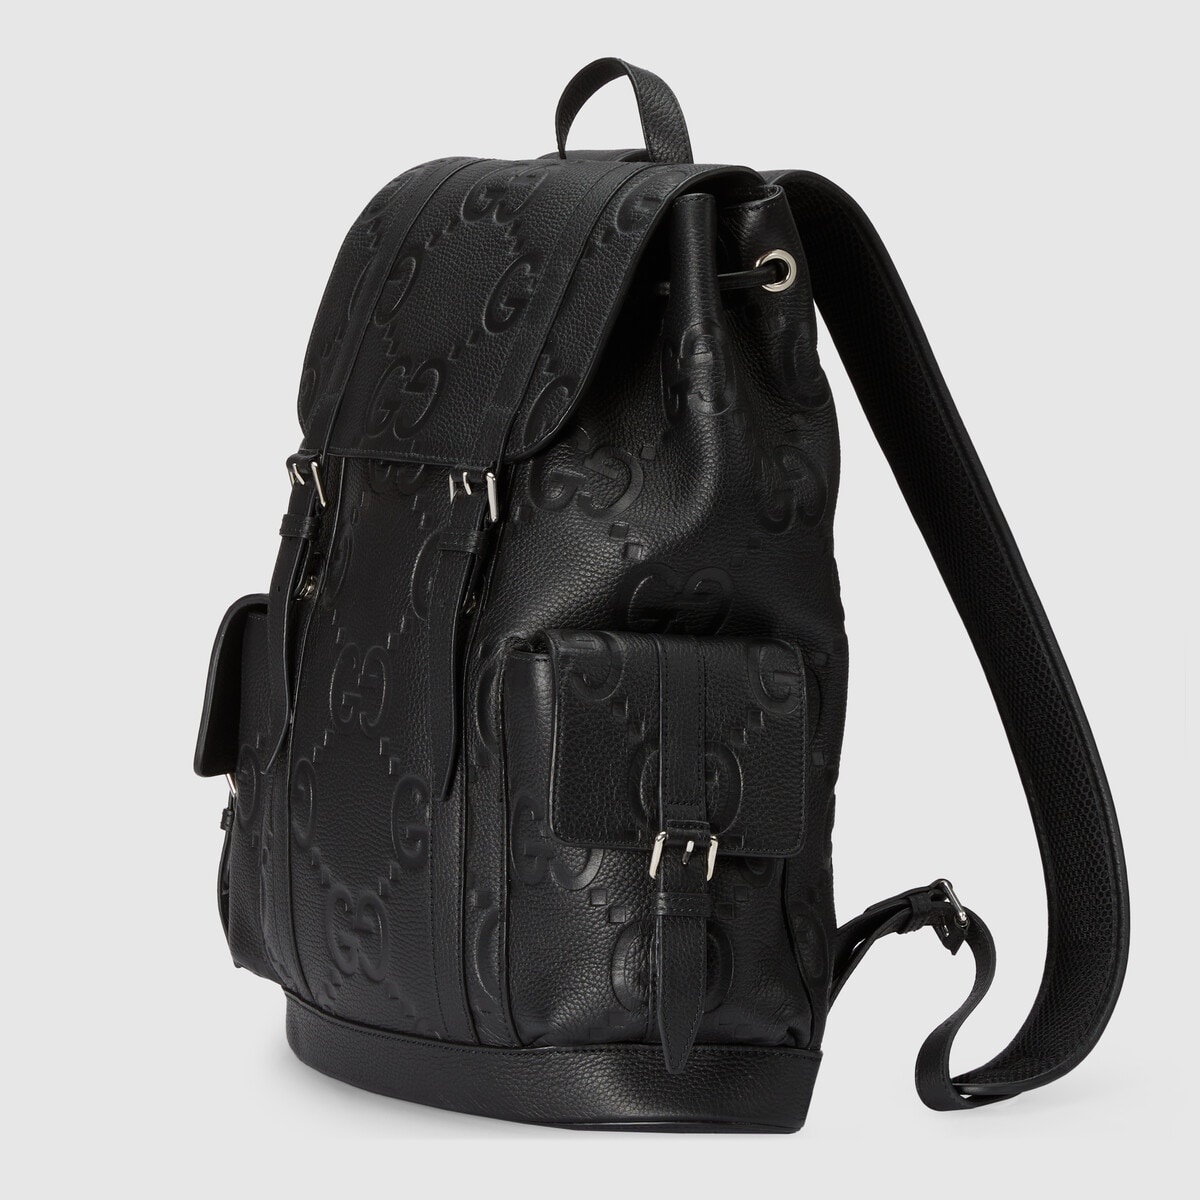 Jumbo GG backpack - 1